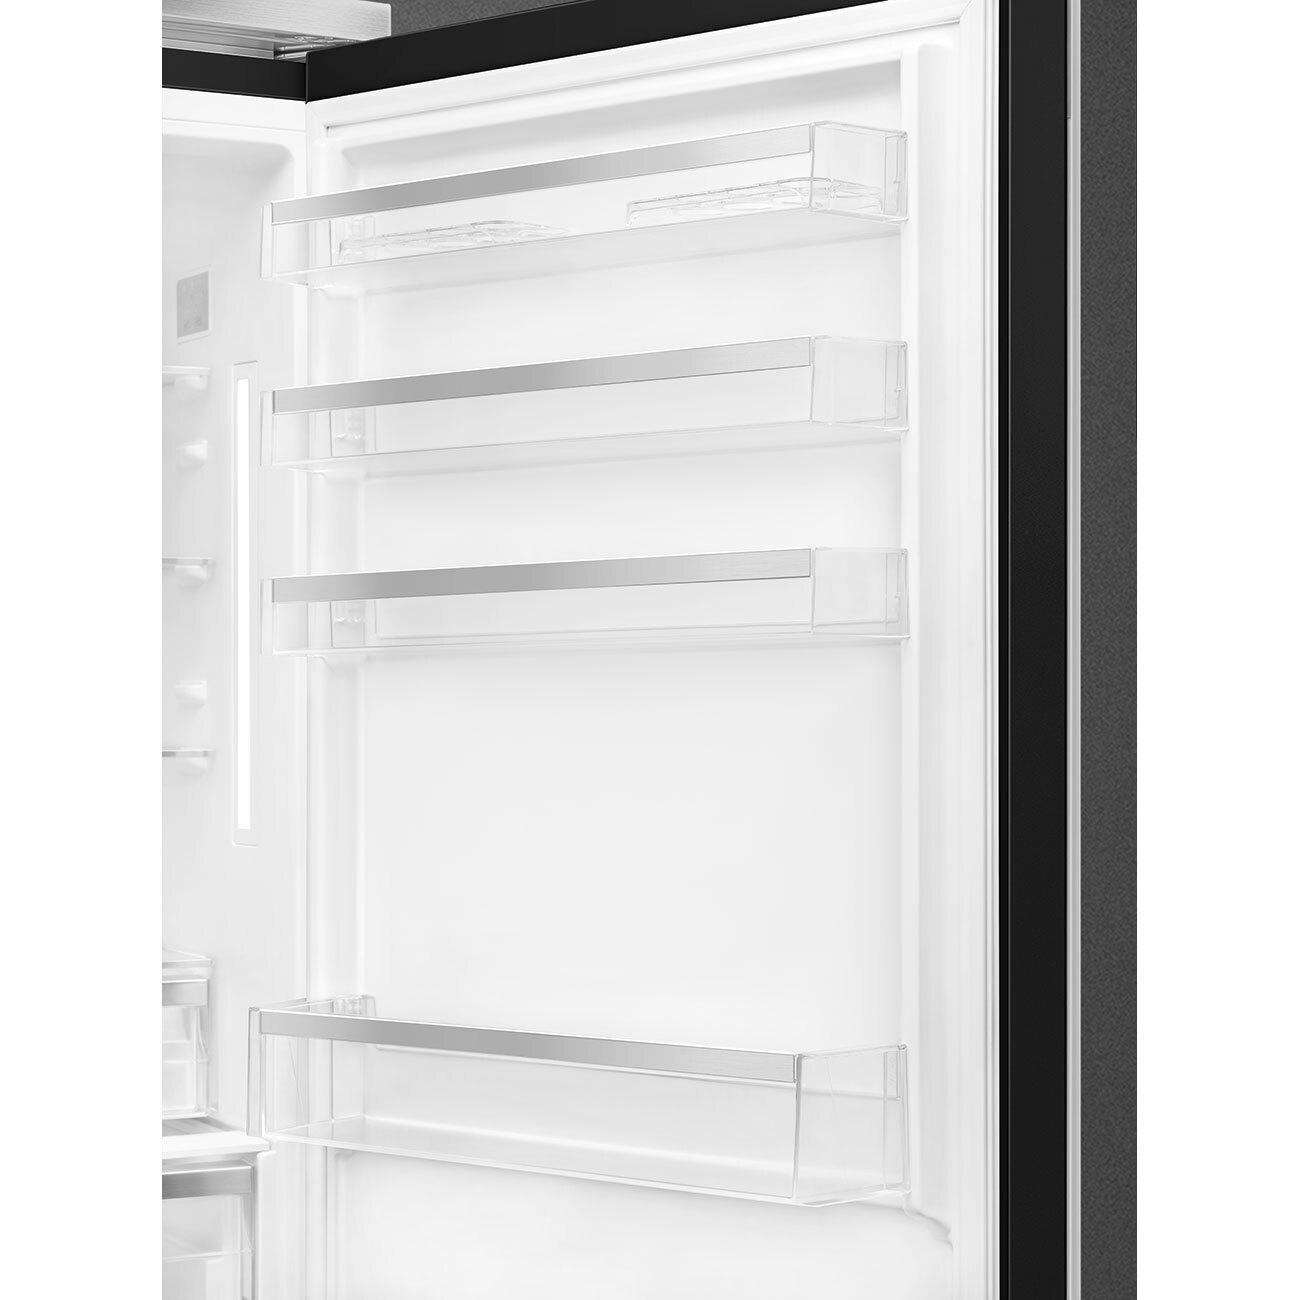 Smeg FA490URBL Refrigerator Black Fa490Urbl